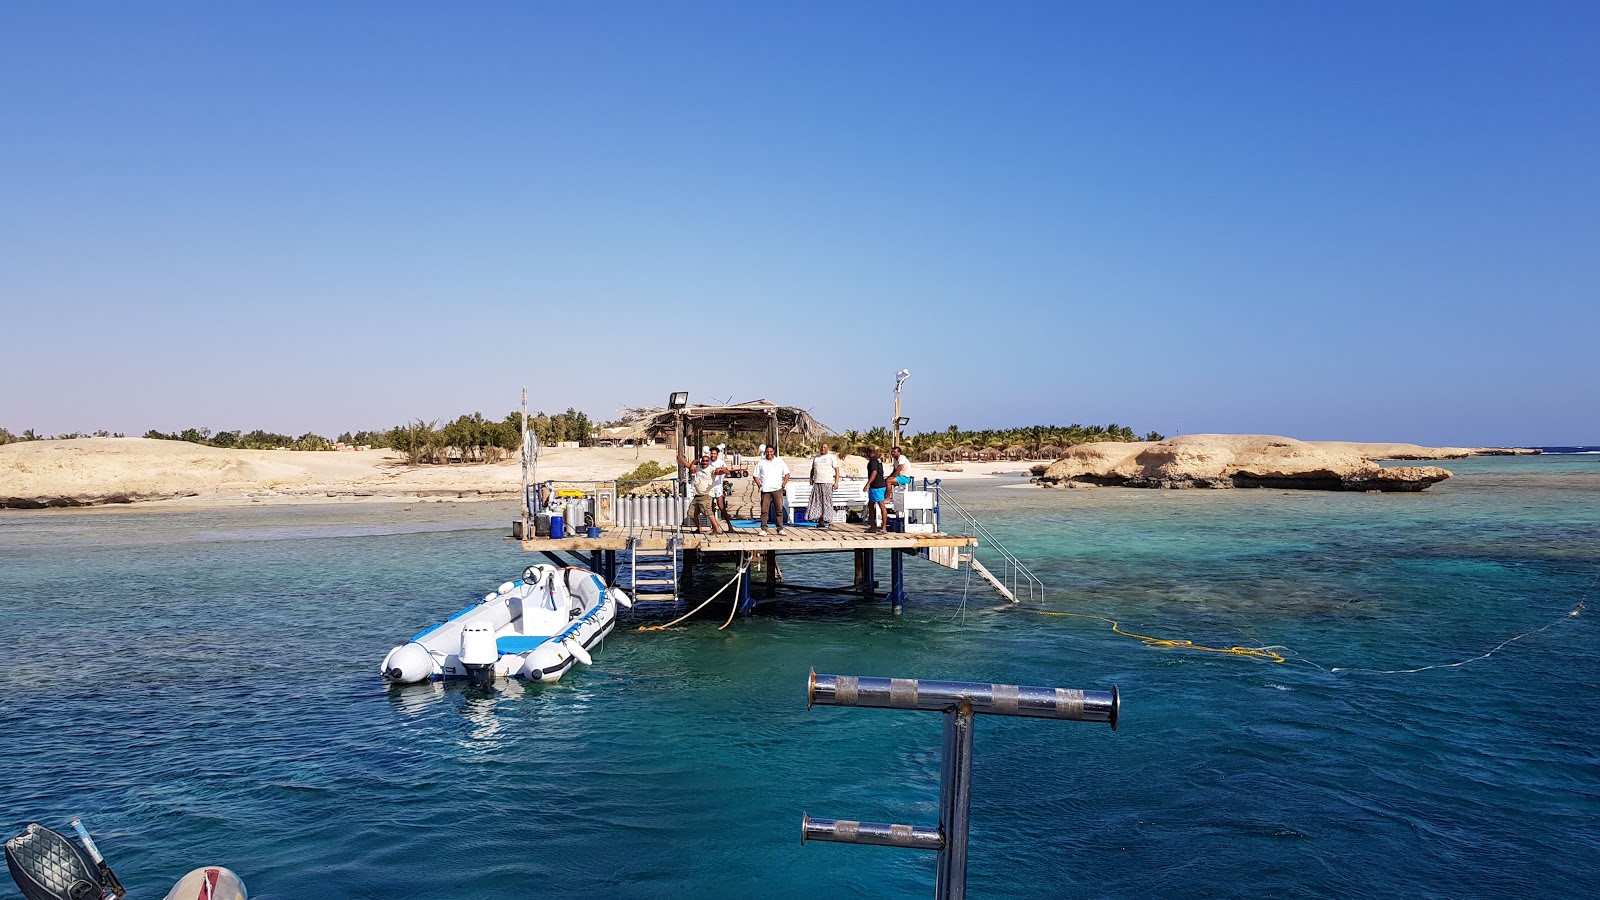 Foto de Mangrove Bay Resort - lugar popular entre os apreciadores de relaxamento